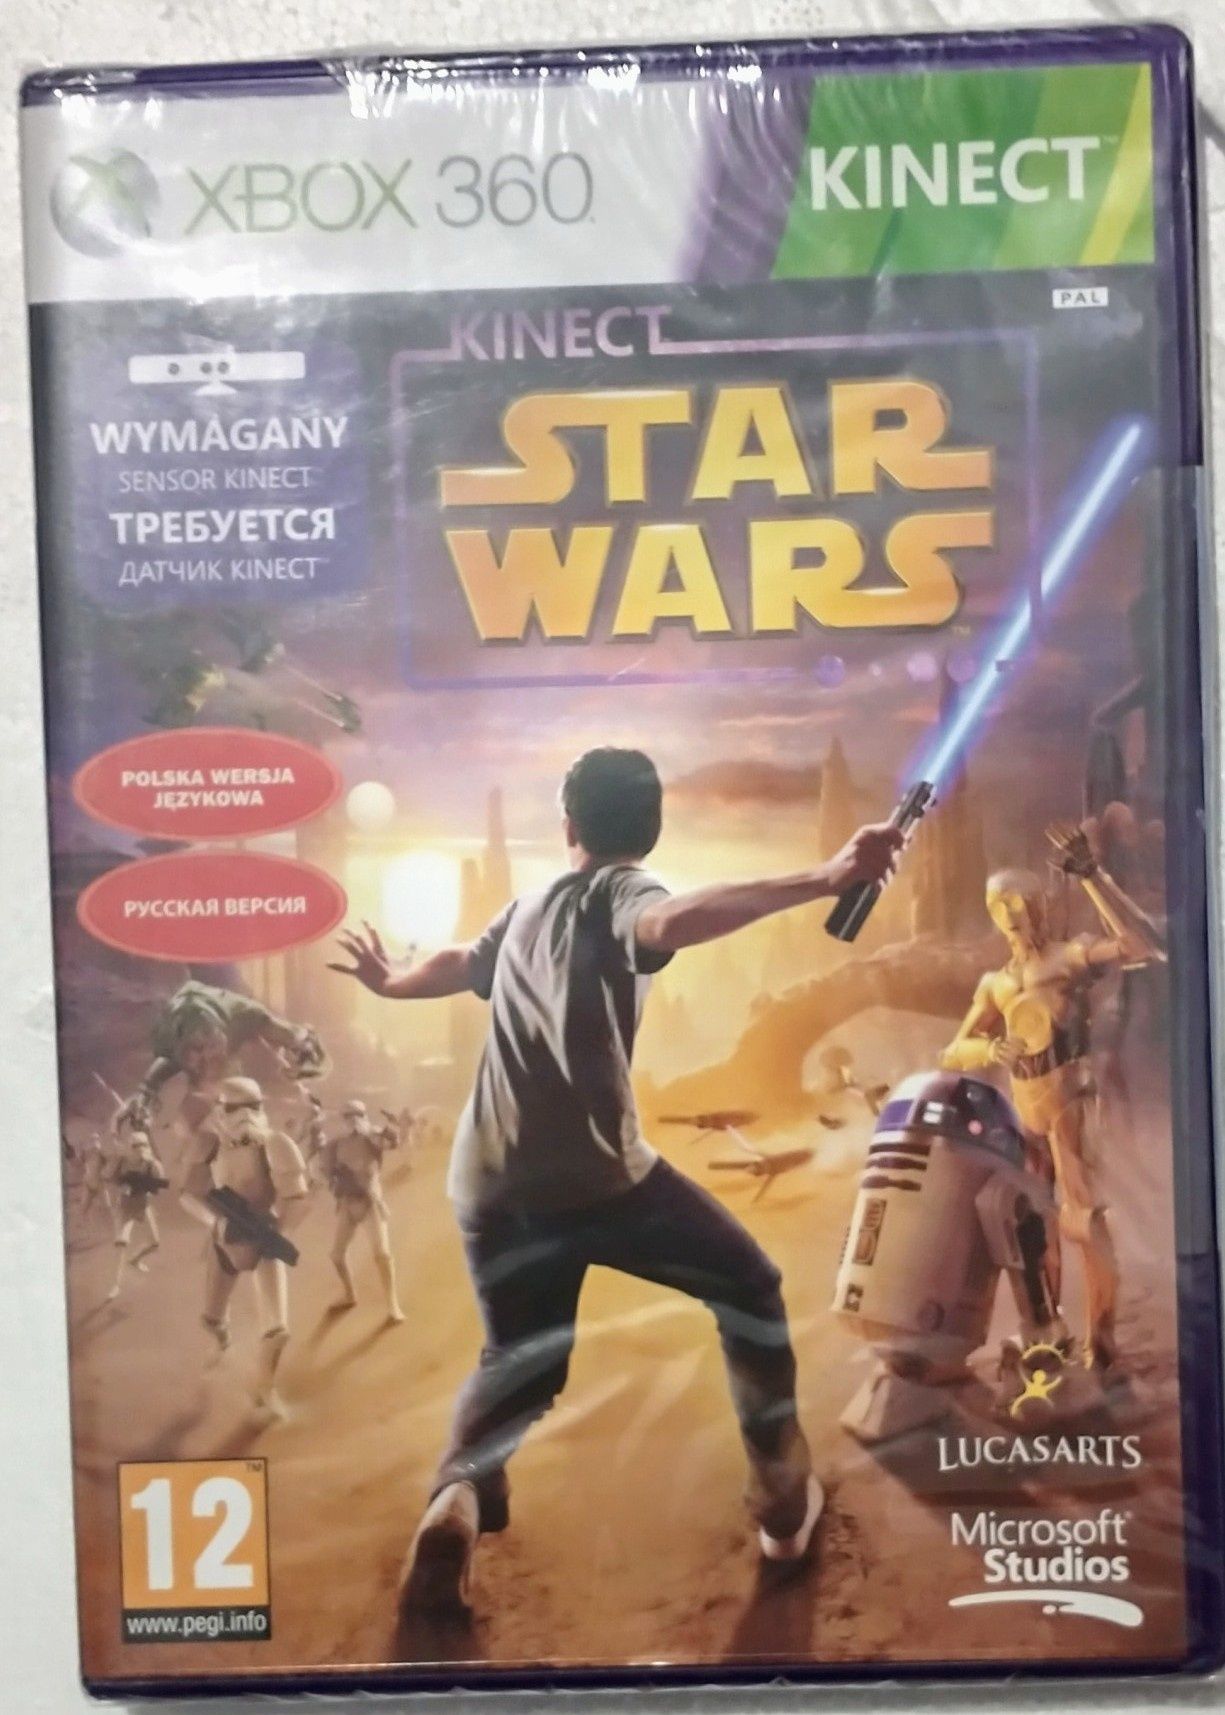 Nowa gra Star Wars na Xbox 360. Kinect. Prezent. Święta.